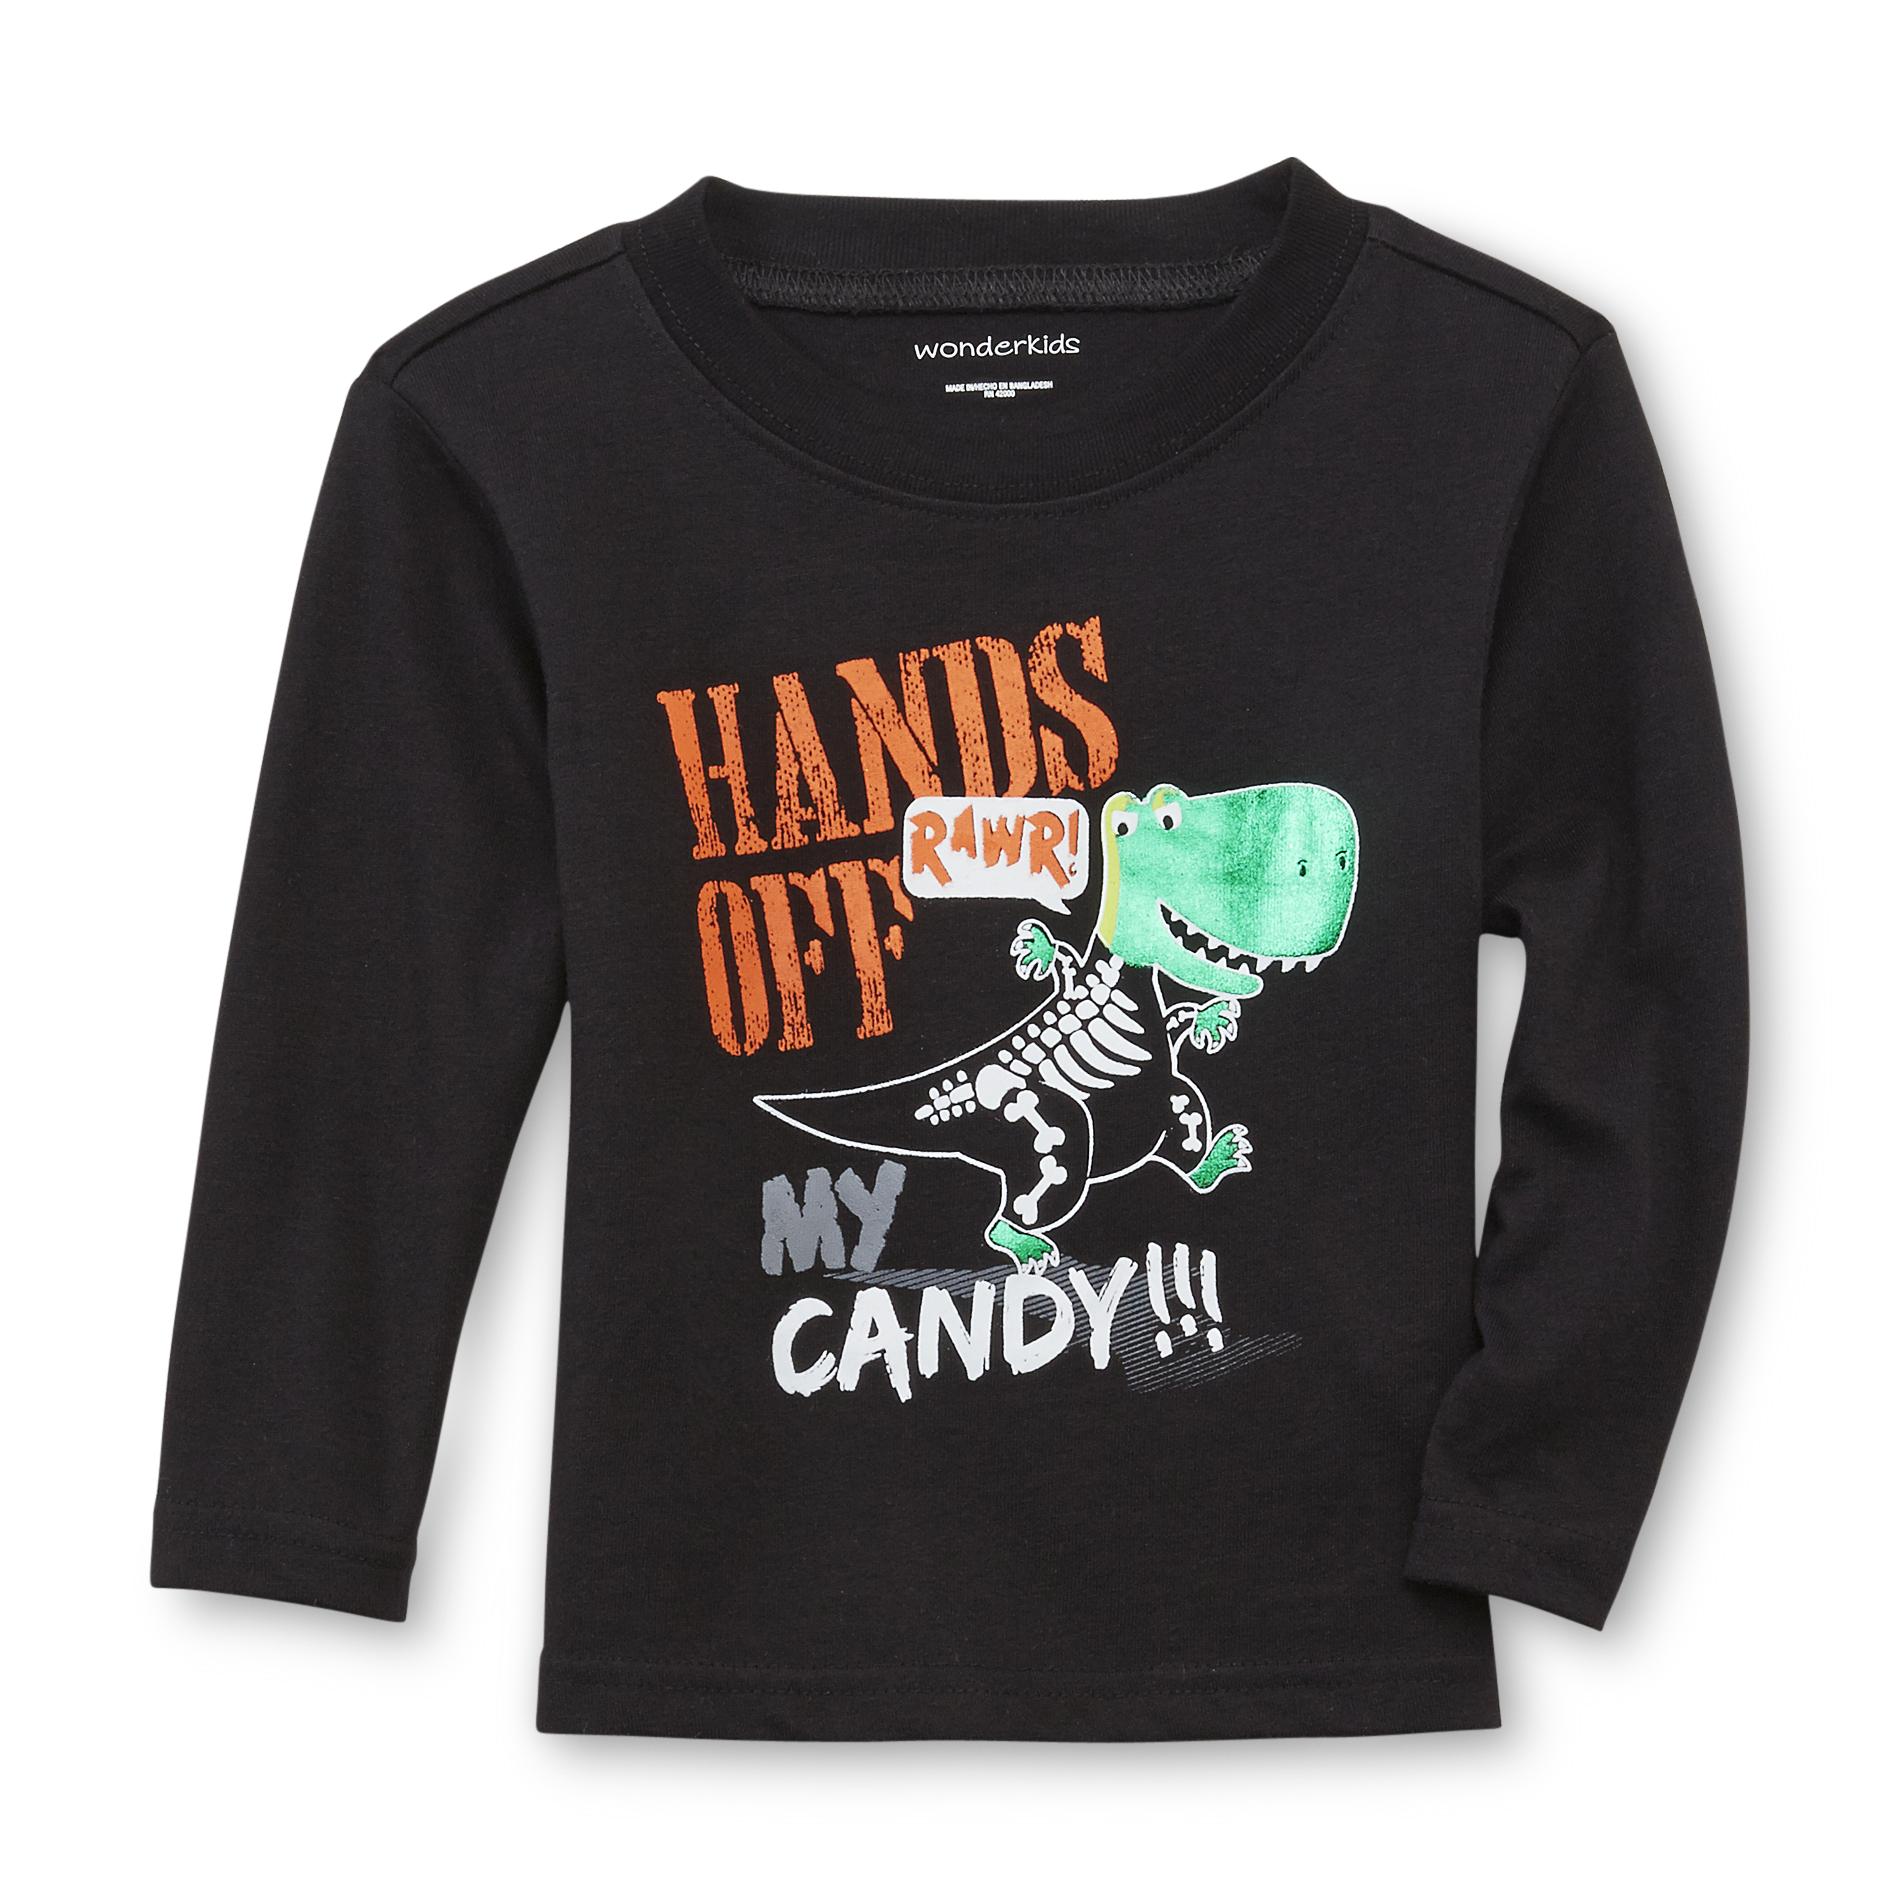 WonderKids Infant & Toddler Boy's Halloween Graphic T-Shirt - Dinosaur